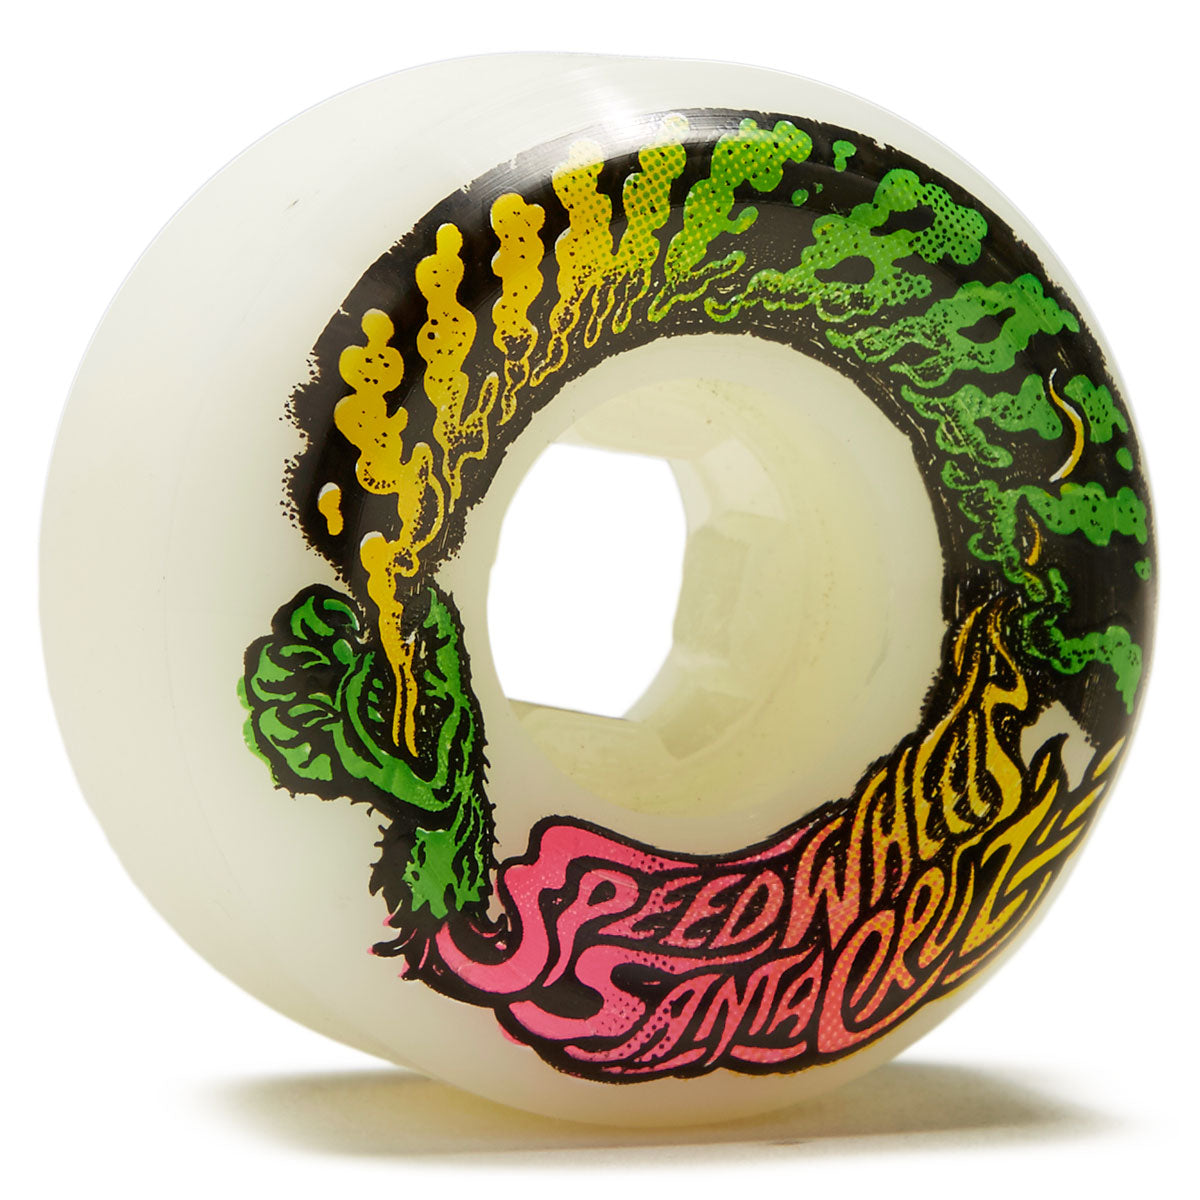 Slime Balls Vomits Mini 97a Skateboard Wheels - White - 53mm image 1